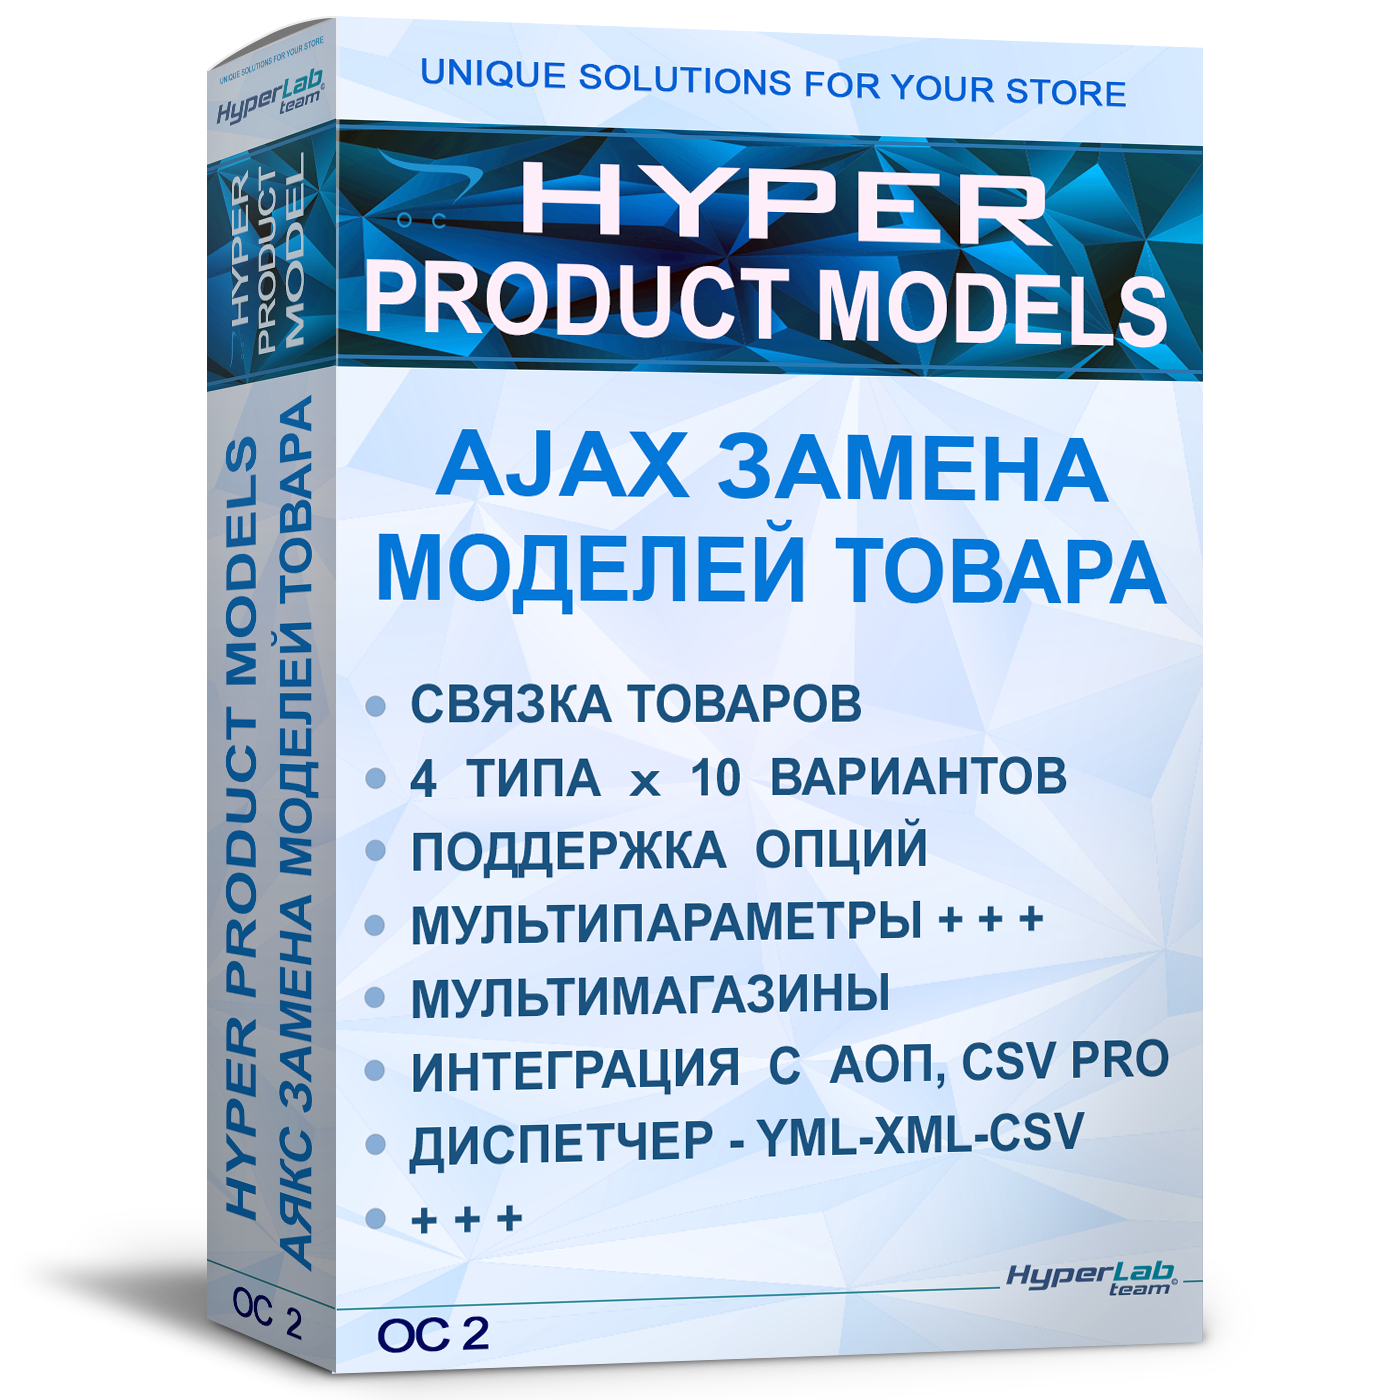 AJAX замена товара по моделям - HYPER PRODUCT MODELS - OC 2